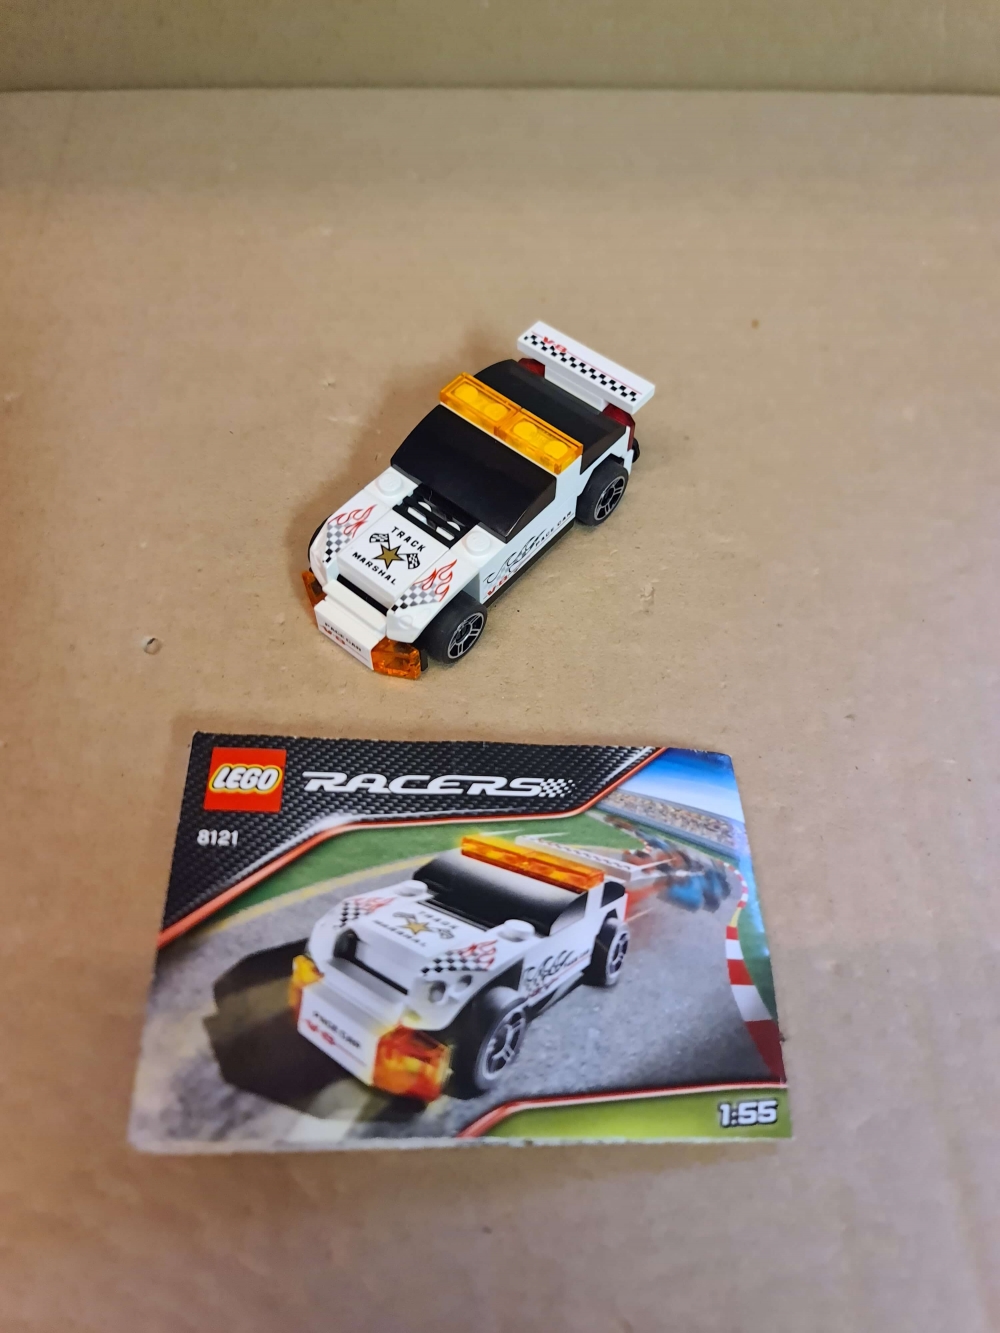 Sett 8121 fra Lego Racers serien.

Som nytt. Komplett med manual. 